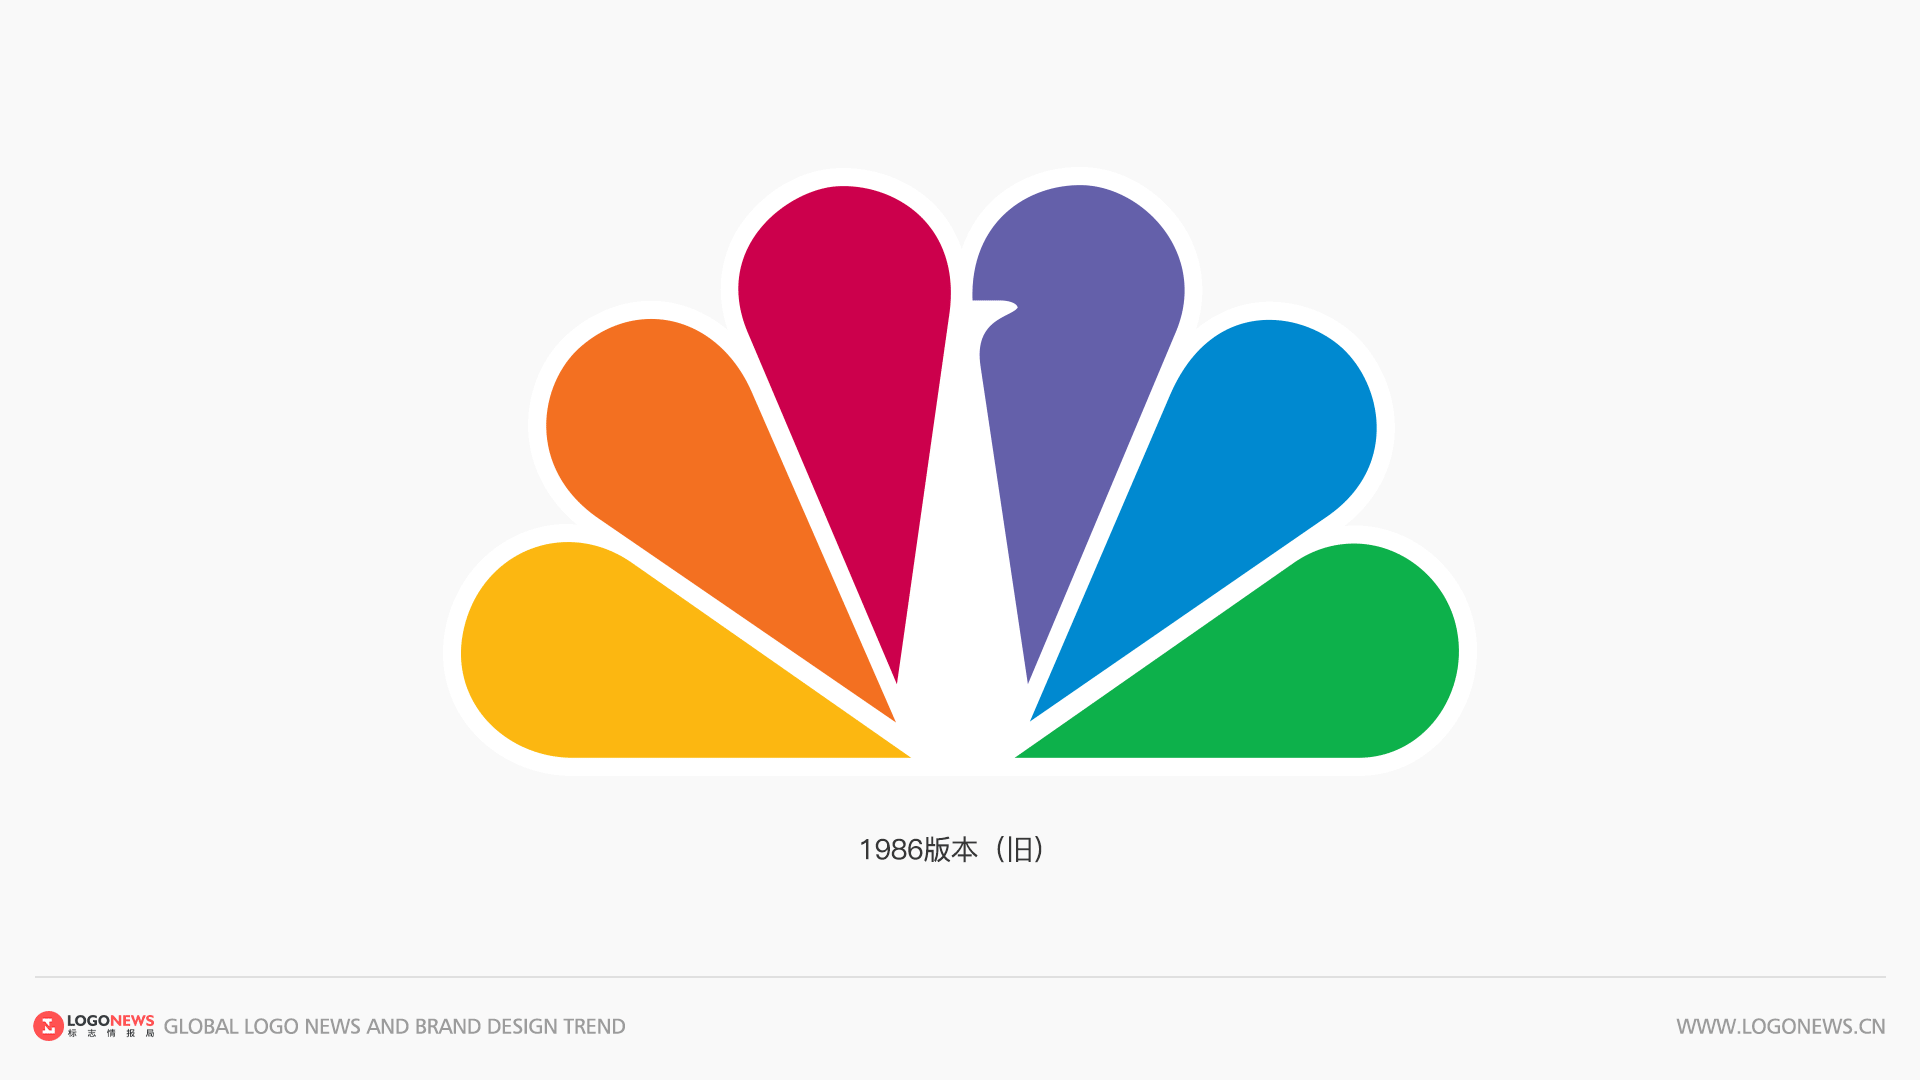 美國國家廣播公司NBC 更新彩色孔雀LOGO，賦予更鮮豔明亮的色彩 4